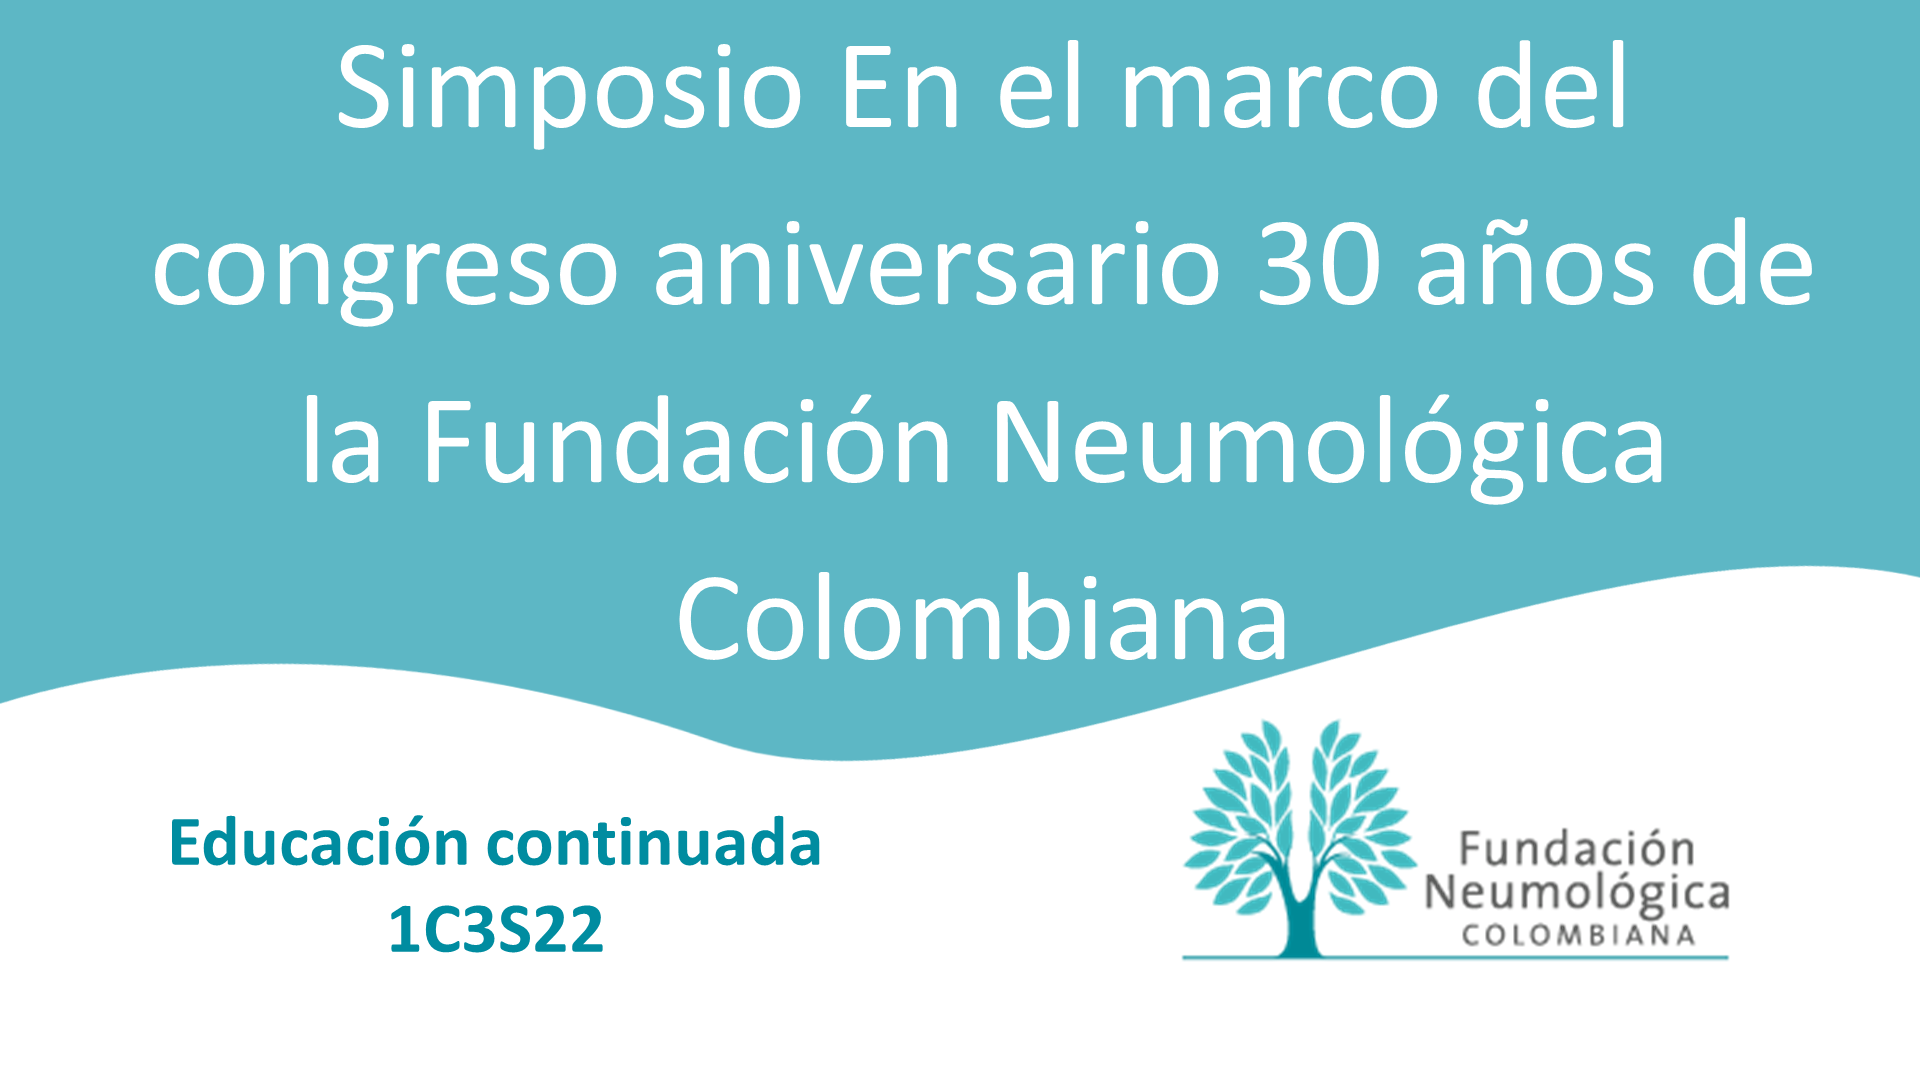 Simposio En el marco del congreso aniversario 30 años de la Fundación Neumológica Colombiana